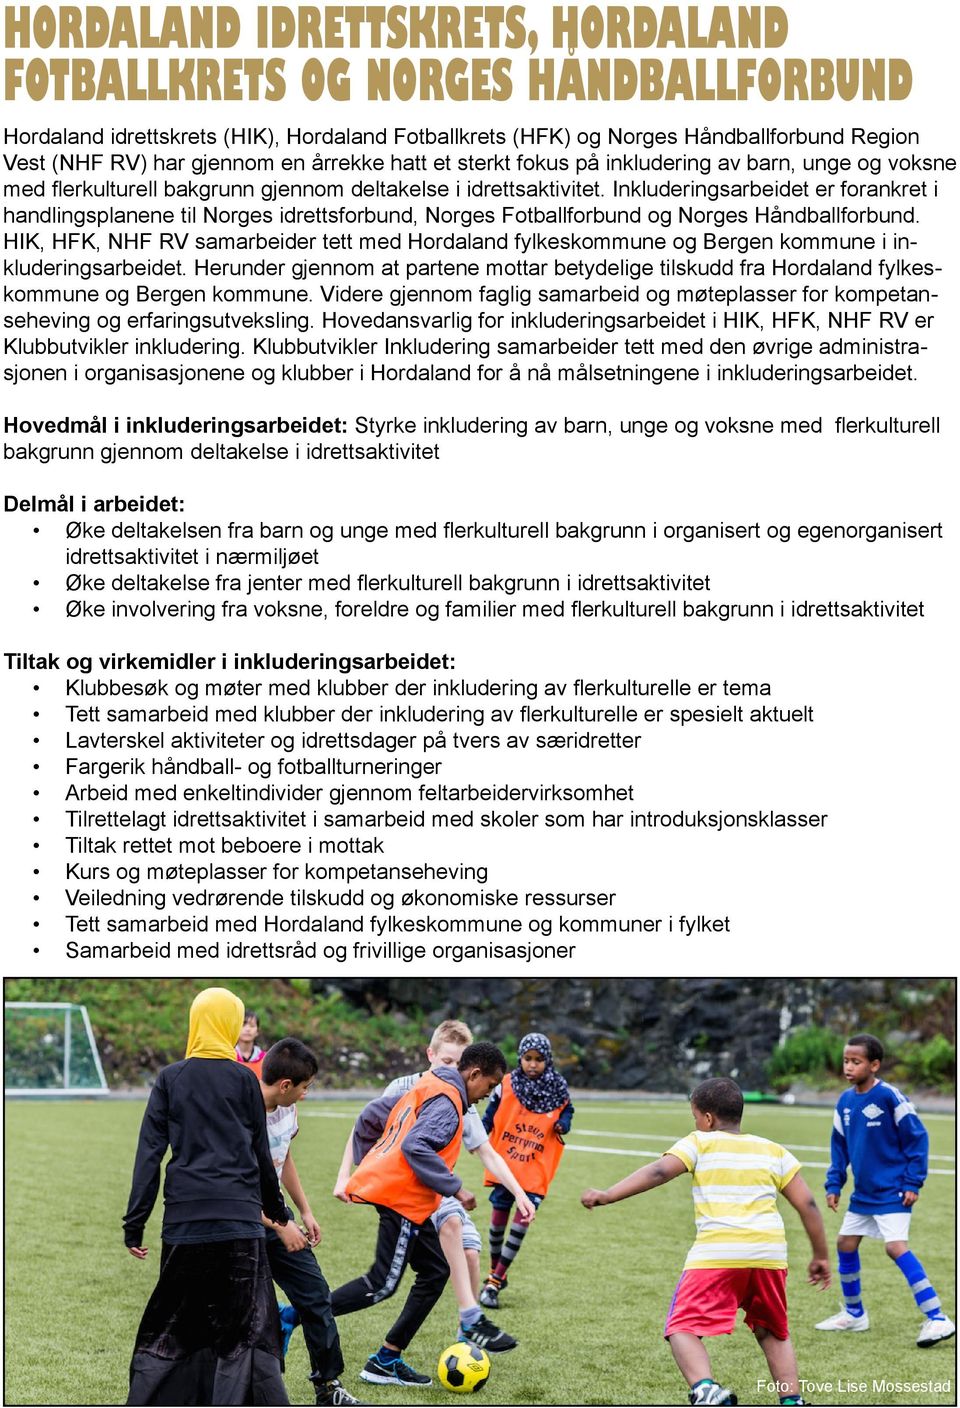 Inkluderingsarbeidet er forankret i handlingsplanene til Norges idrettsforbund, Norges Fotballforbund og Norges Håndballforbund.